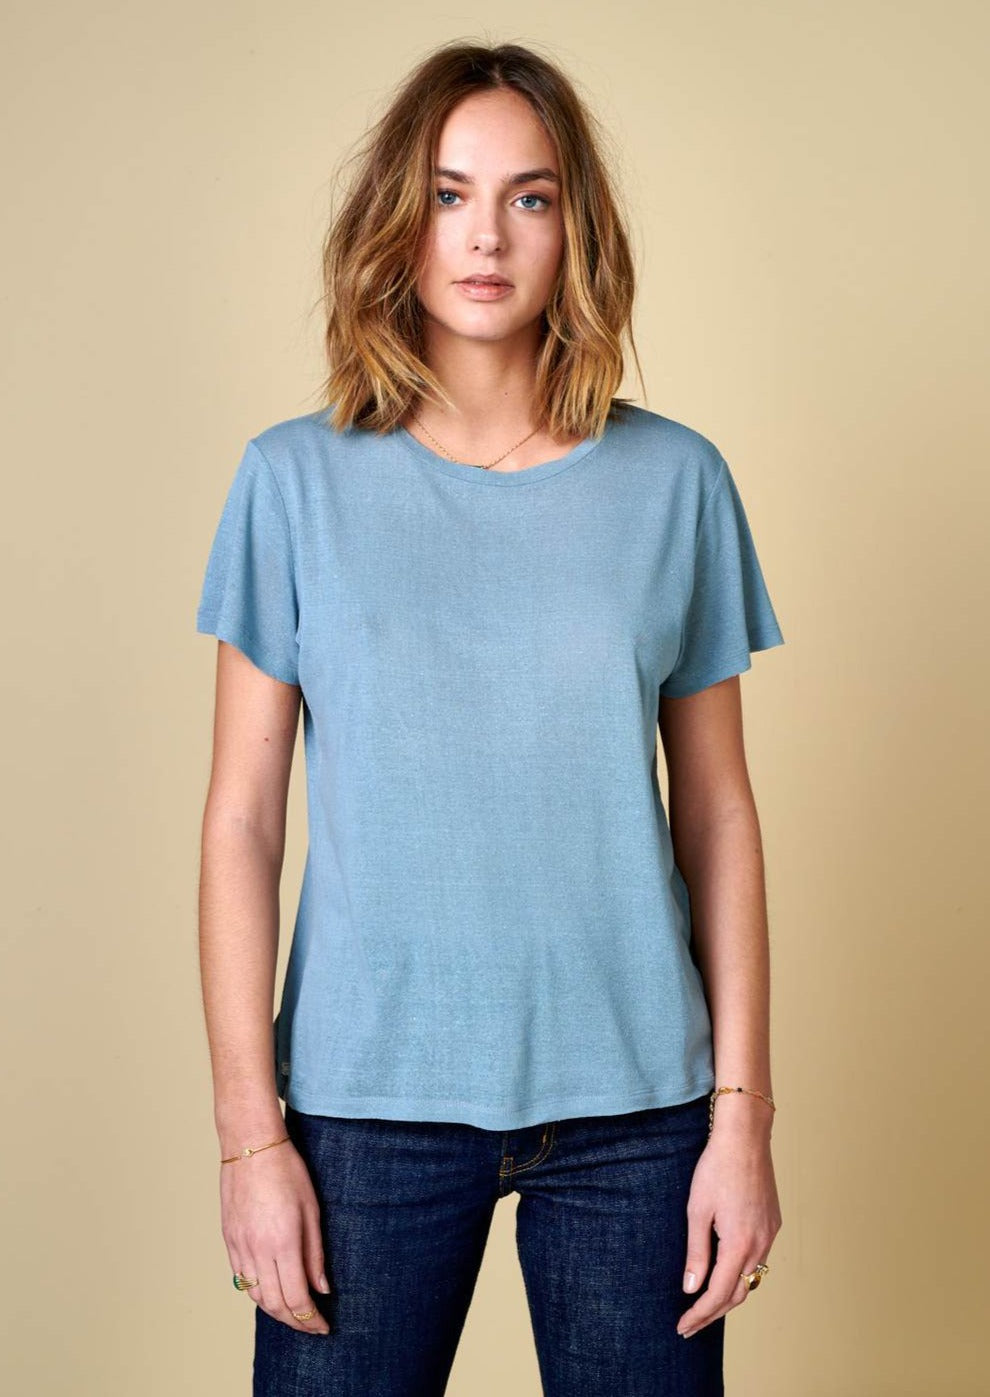 Bellerose - Genny T-shirt: Metal Blue - ouimillie